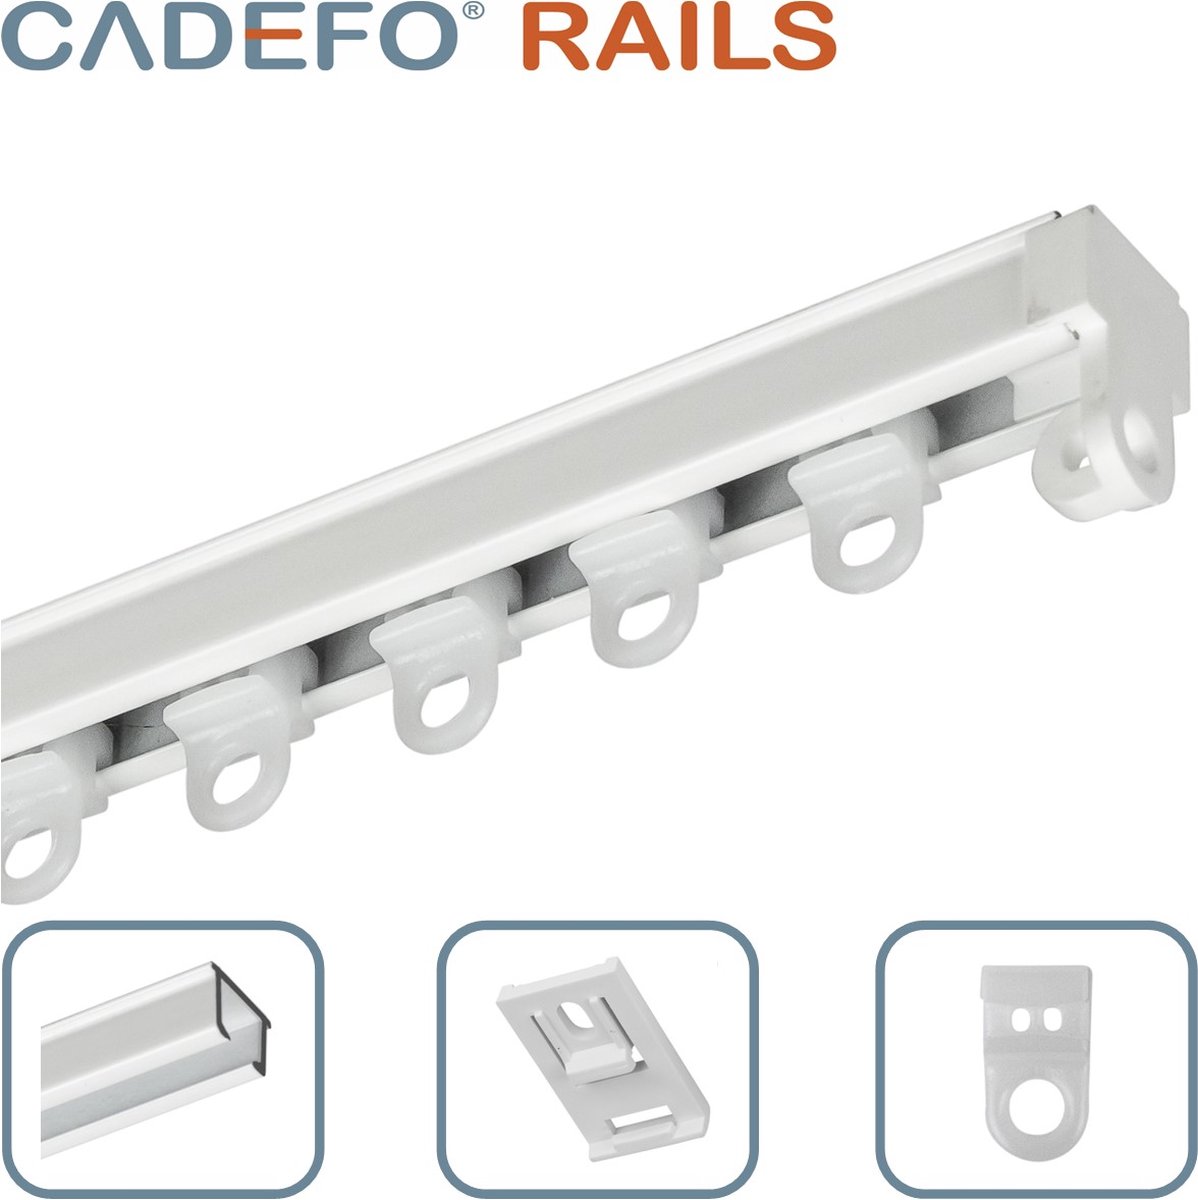 CADEFO RAILS (551 - 600 cm) Gordijnrails - Compleet op maat! - UIT 1 STUK - Leverbaar tot 6 meter - Plafondbevestiging - Lengte 573 cm